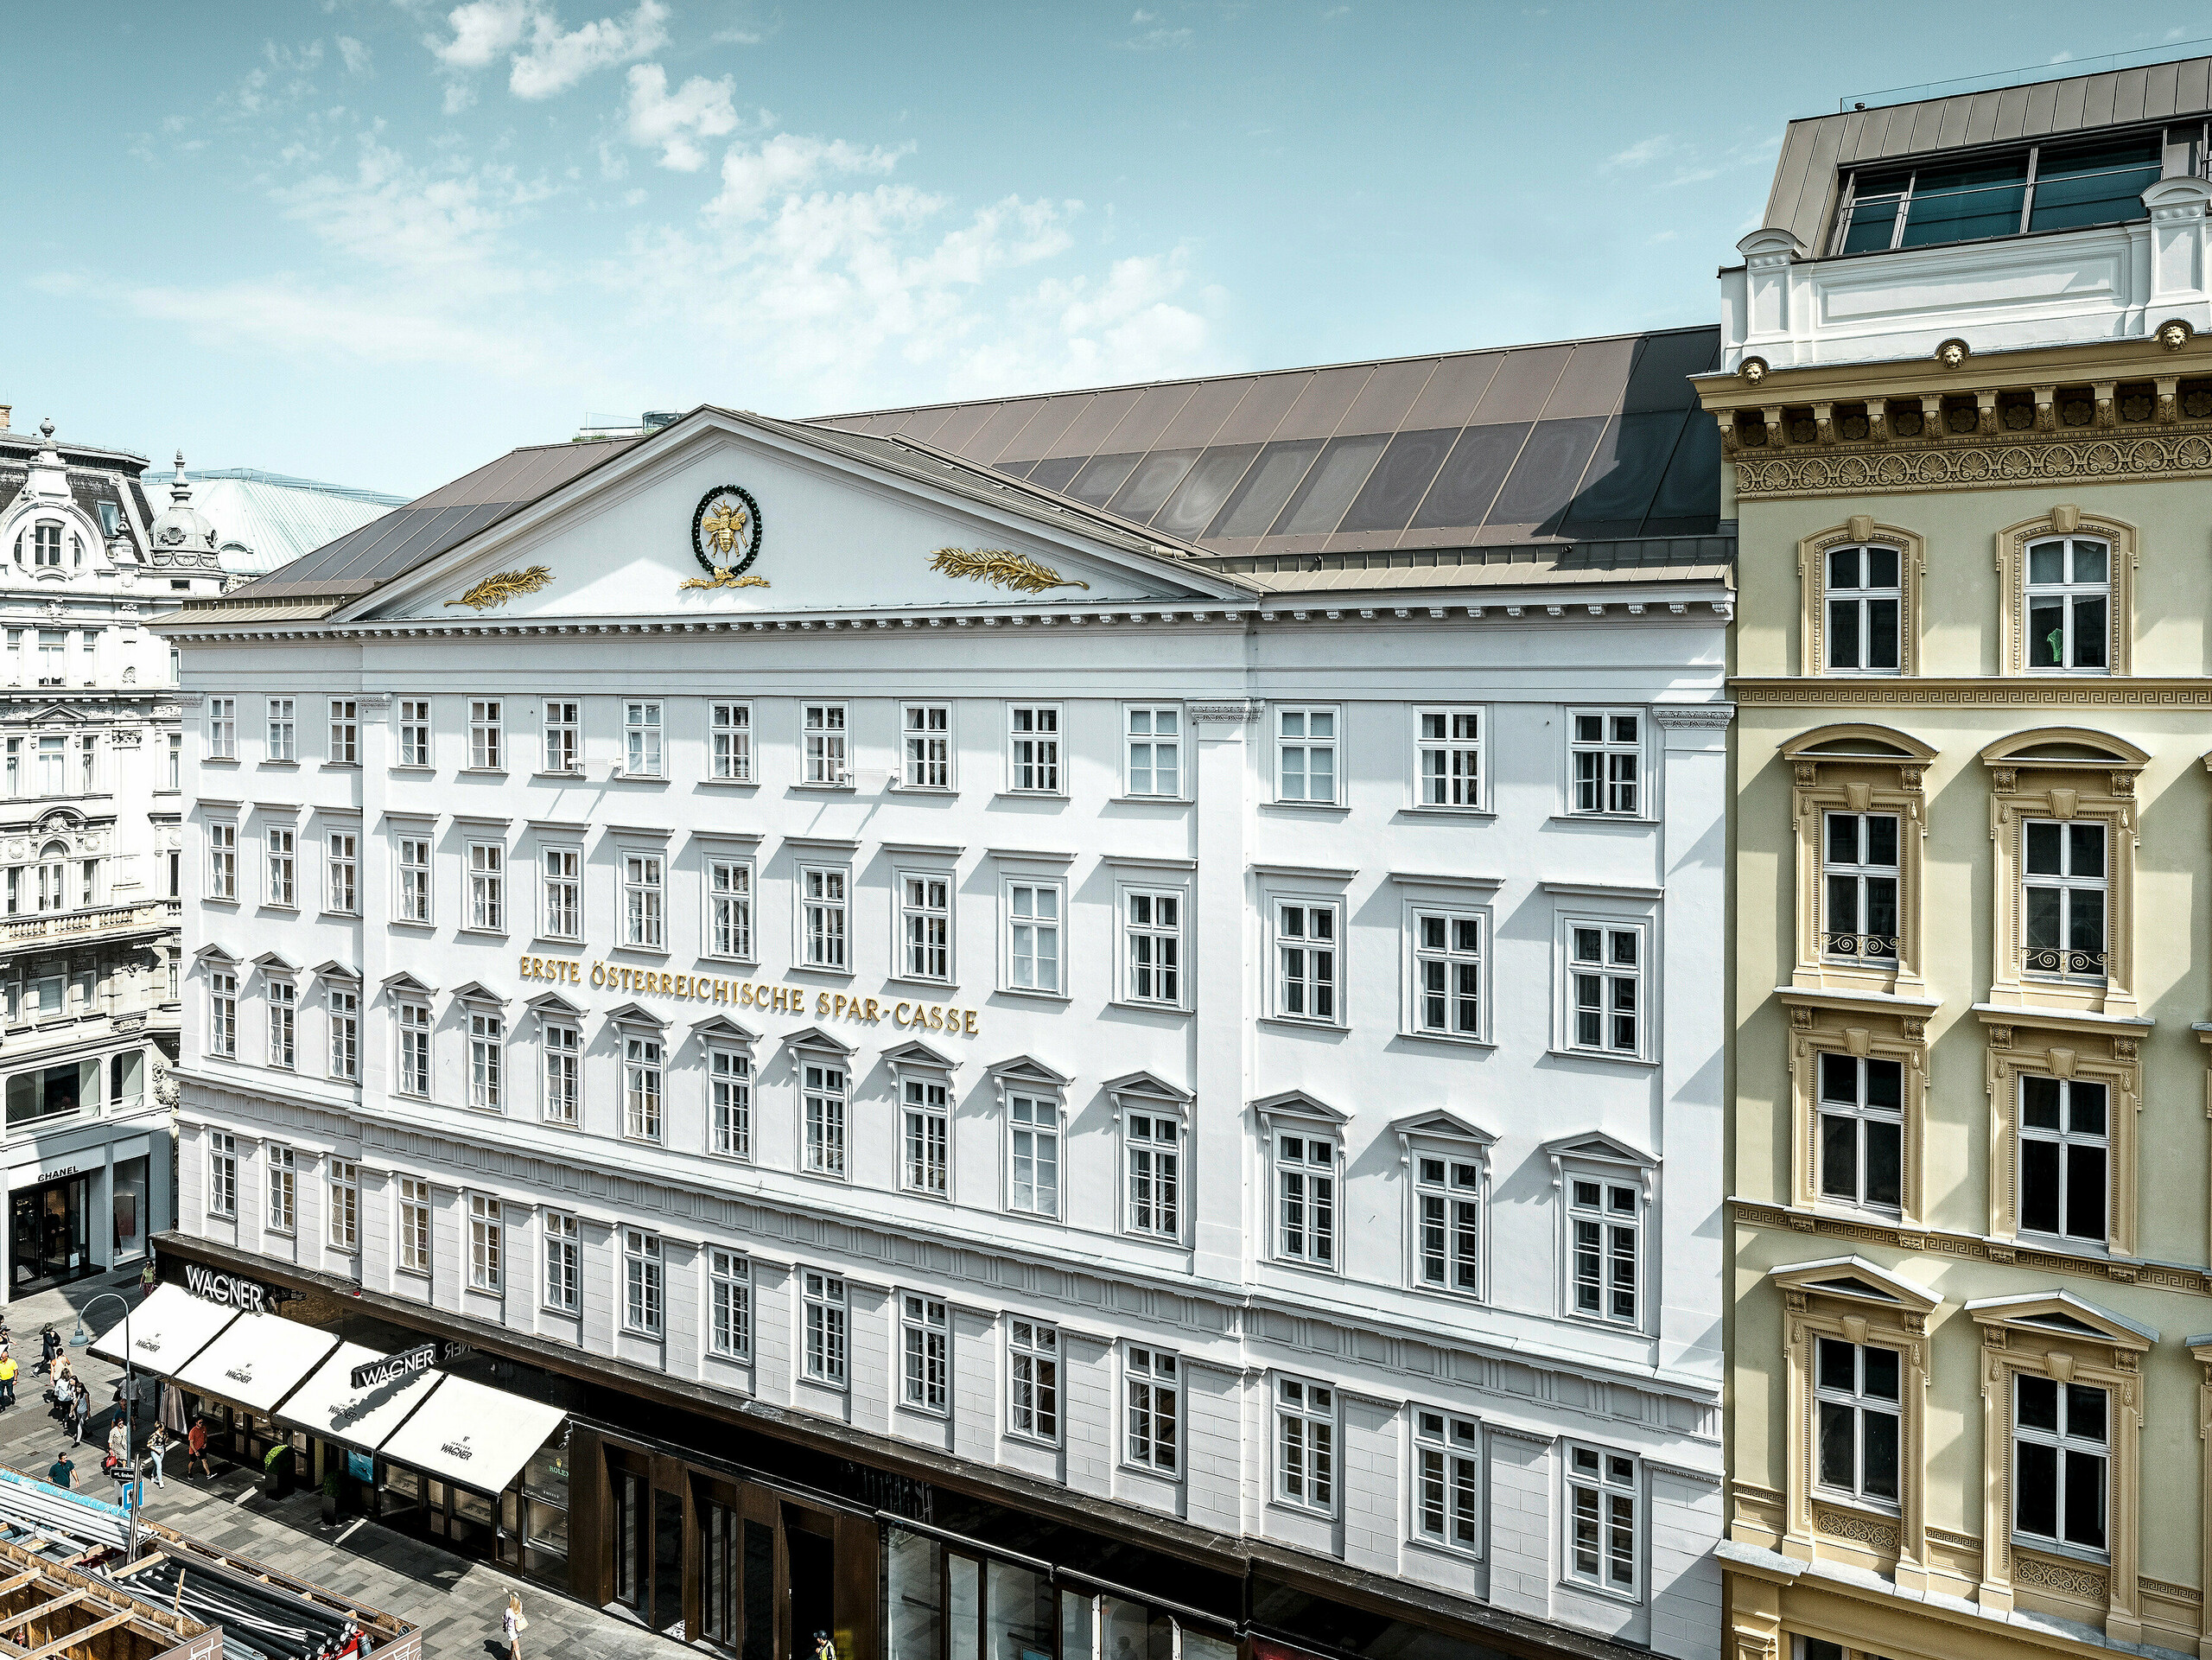 Vue de la partie latérale de l'hôtel, avec sa façade historique et son toit en aluminium de couleur bronze.